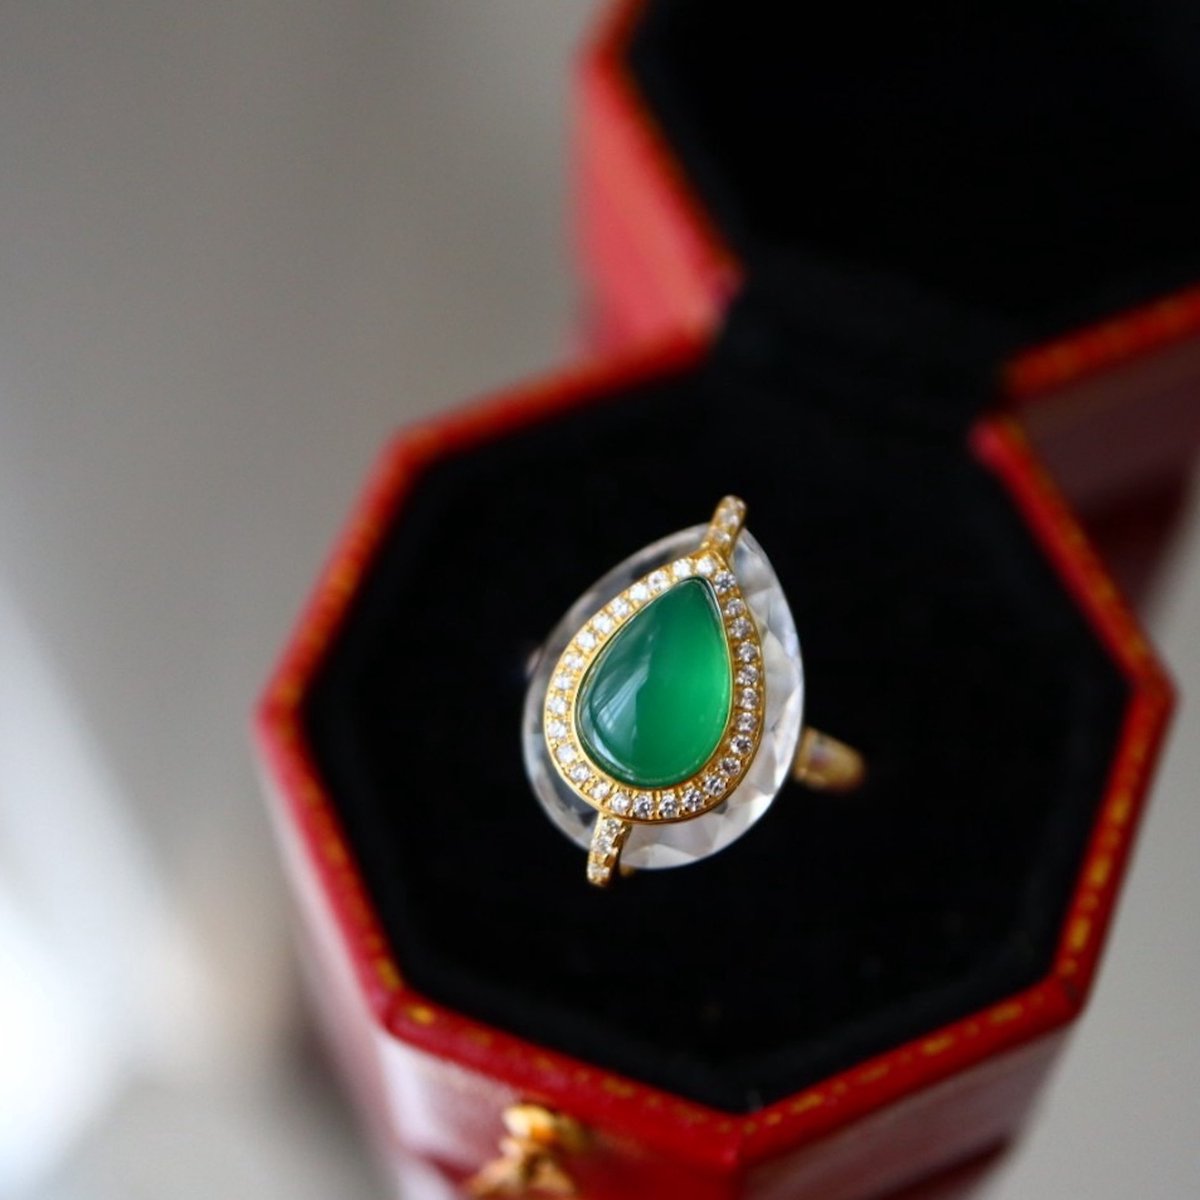 Royal groen - Sterling zilver Royal stijl natuurlijke groene onyx peer geslepen heldere kwartskristal ring - verstelbaar